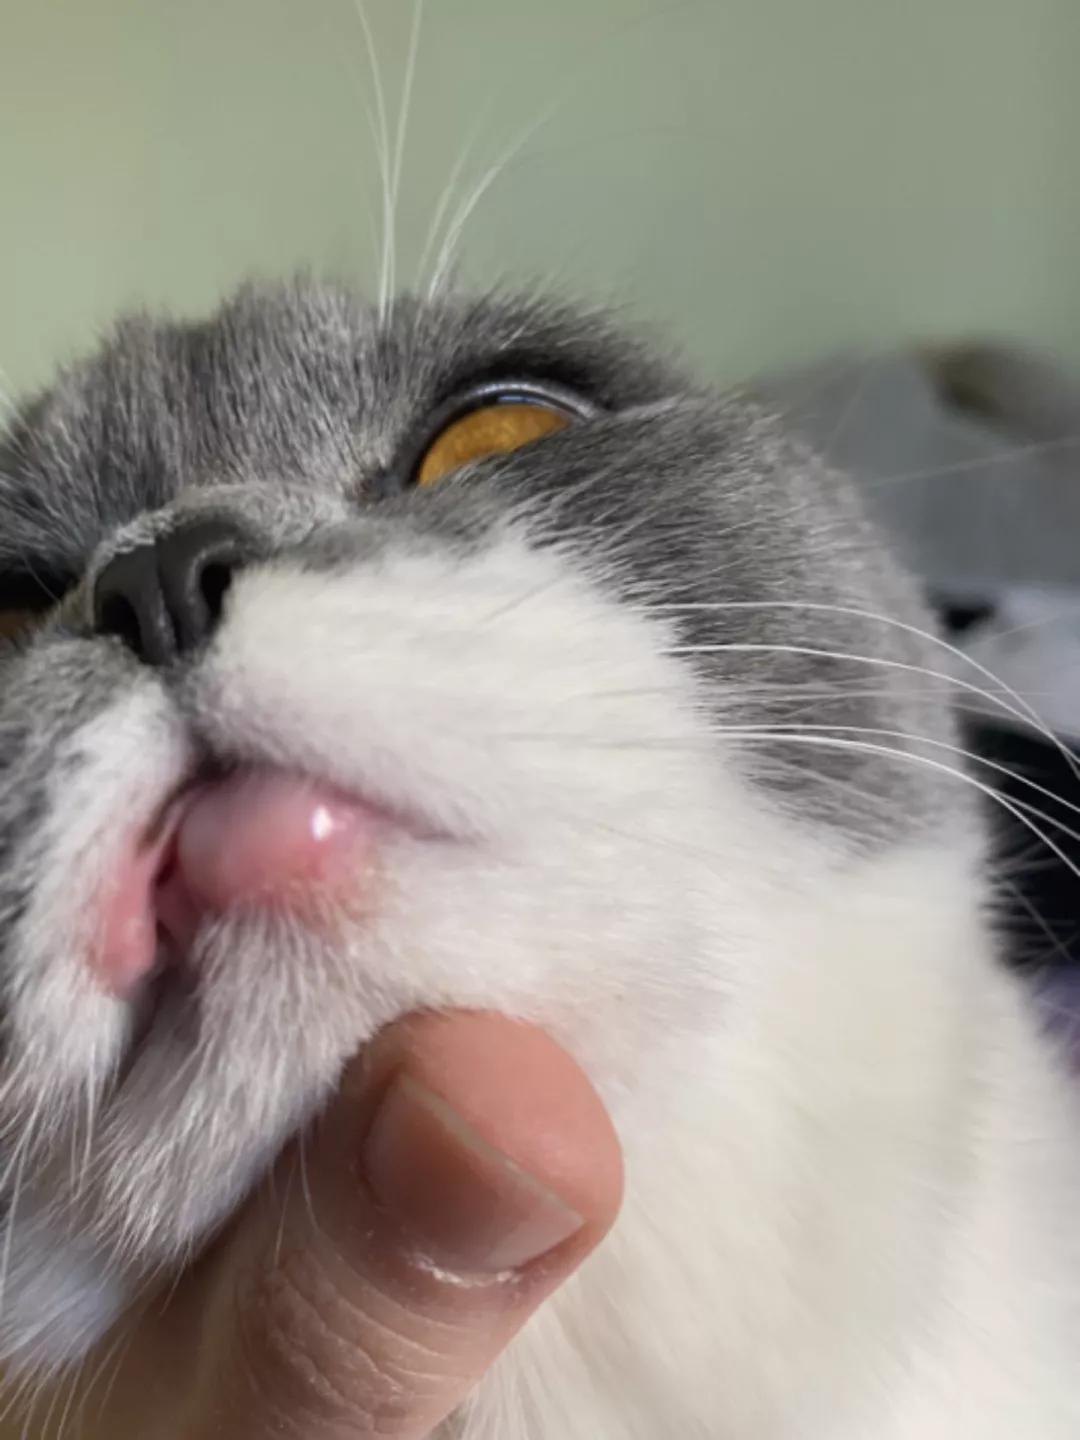 猫咪嘴唇怎么发炎凹陷了注意可能是嗜酸性肉芽肿